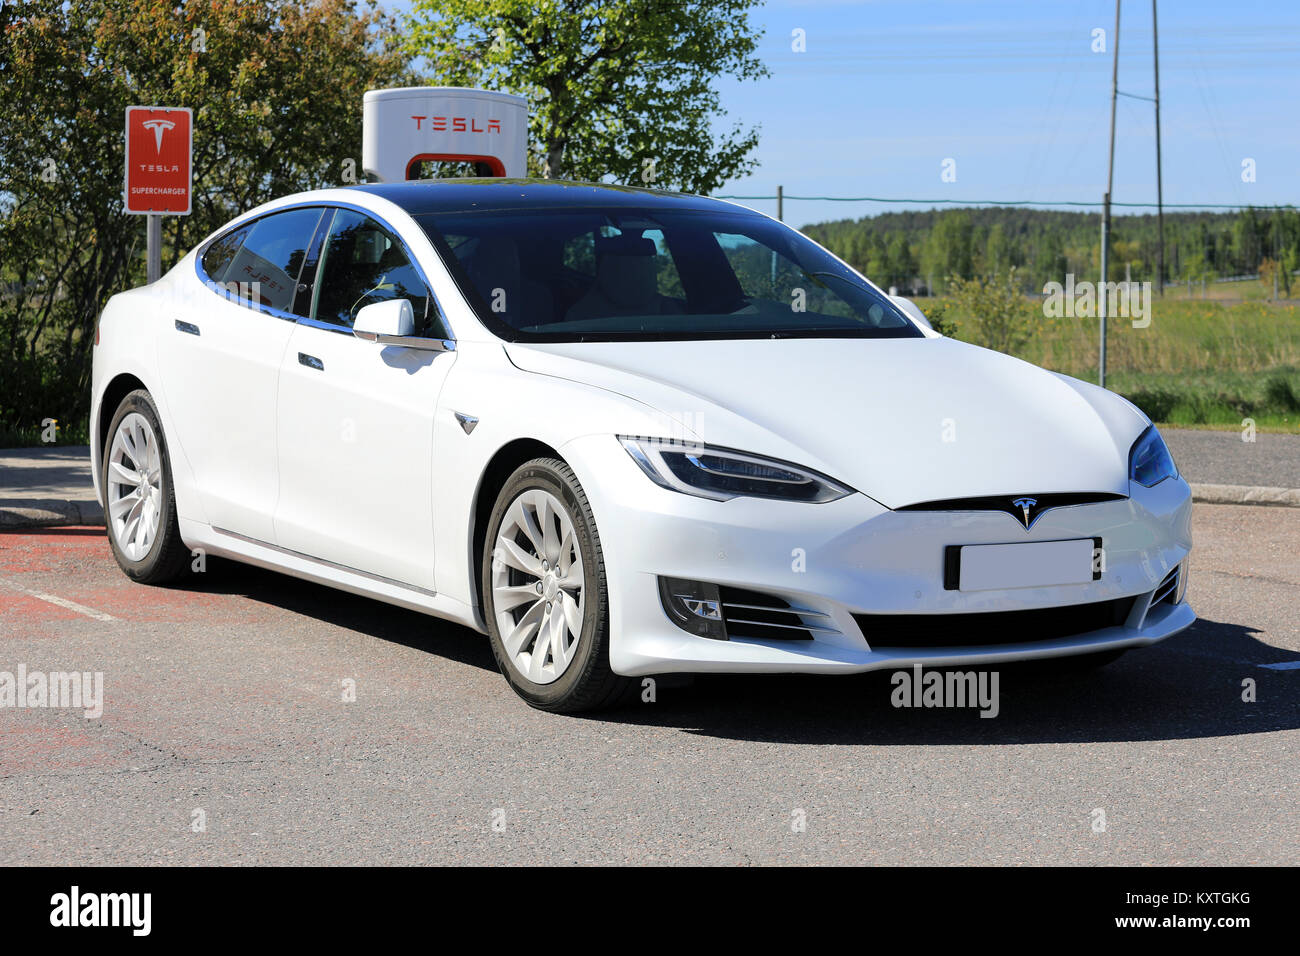 PAIMIO, Finlandia - 3 giugno 2017: Bianco Tesla Model S berlina di lusso con nuovo design all'esterno del veicolo è in carica di Tesla Supercharger Statio Foto Stock